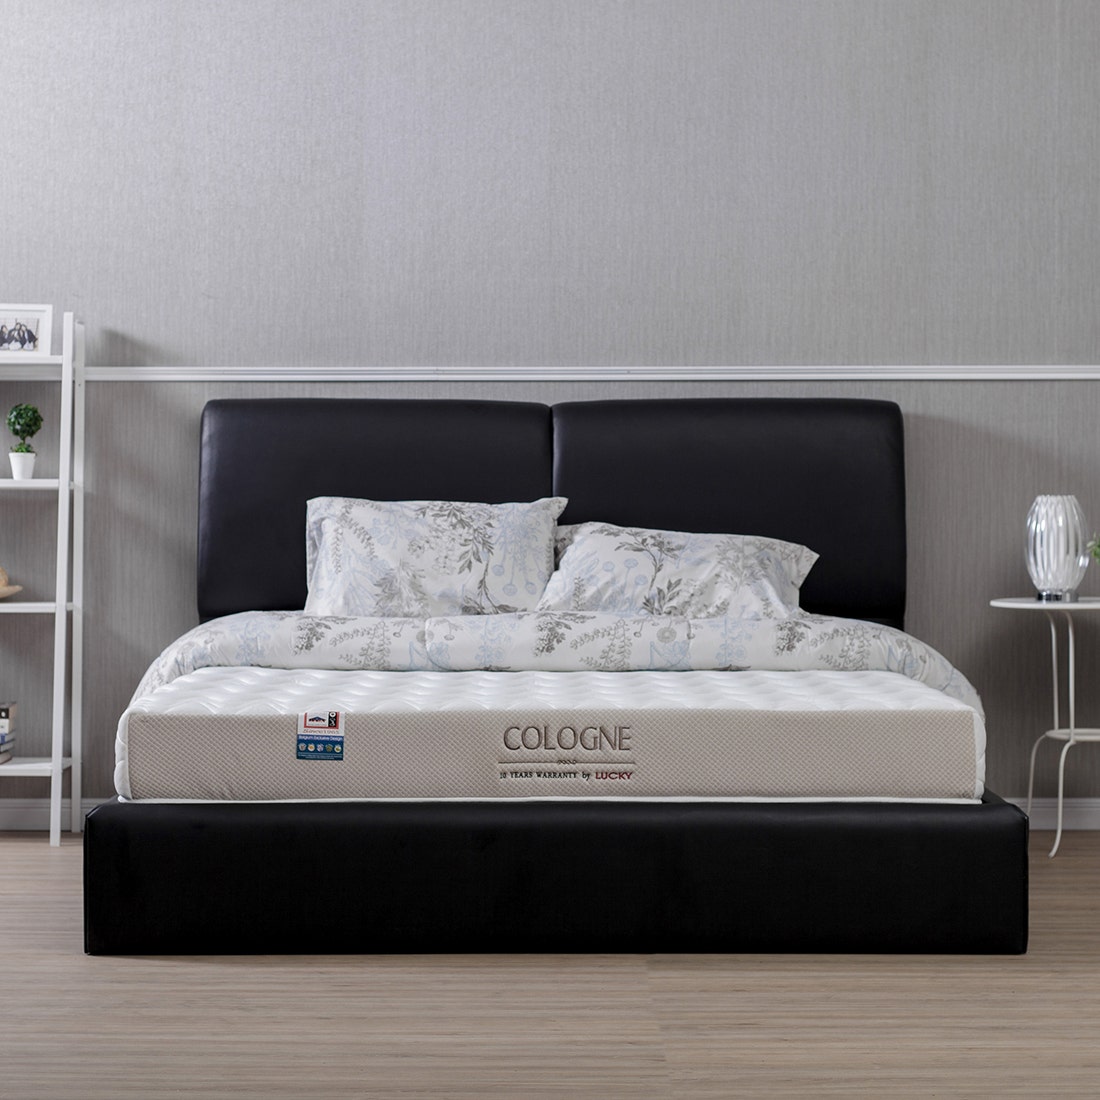 39001285-mattress-bedding-mattresses-foam-mattresses-31